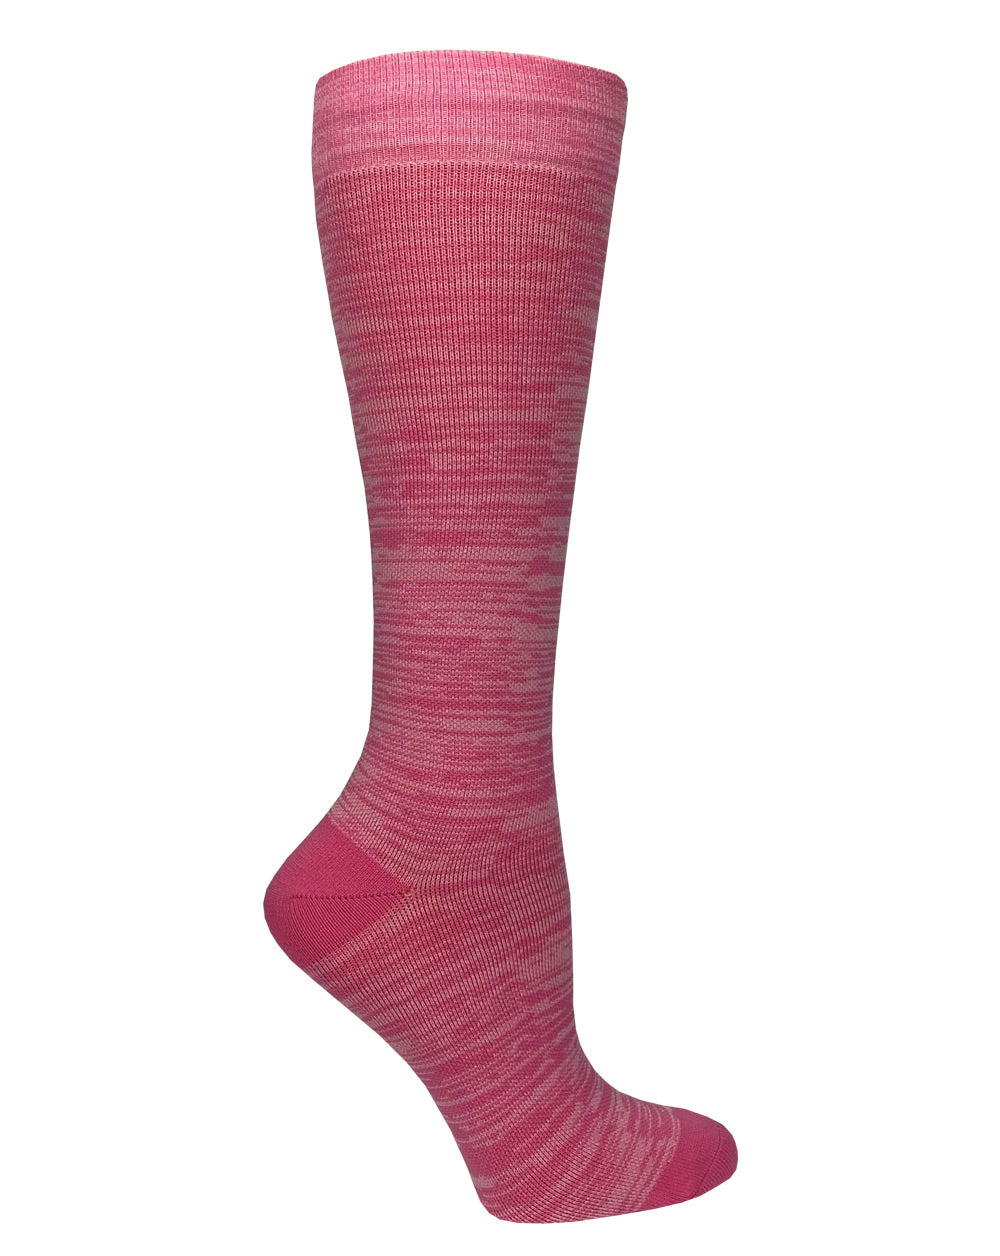 12" Premium Knit Compression Socks - Static Pink